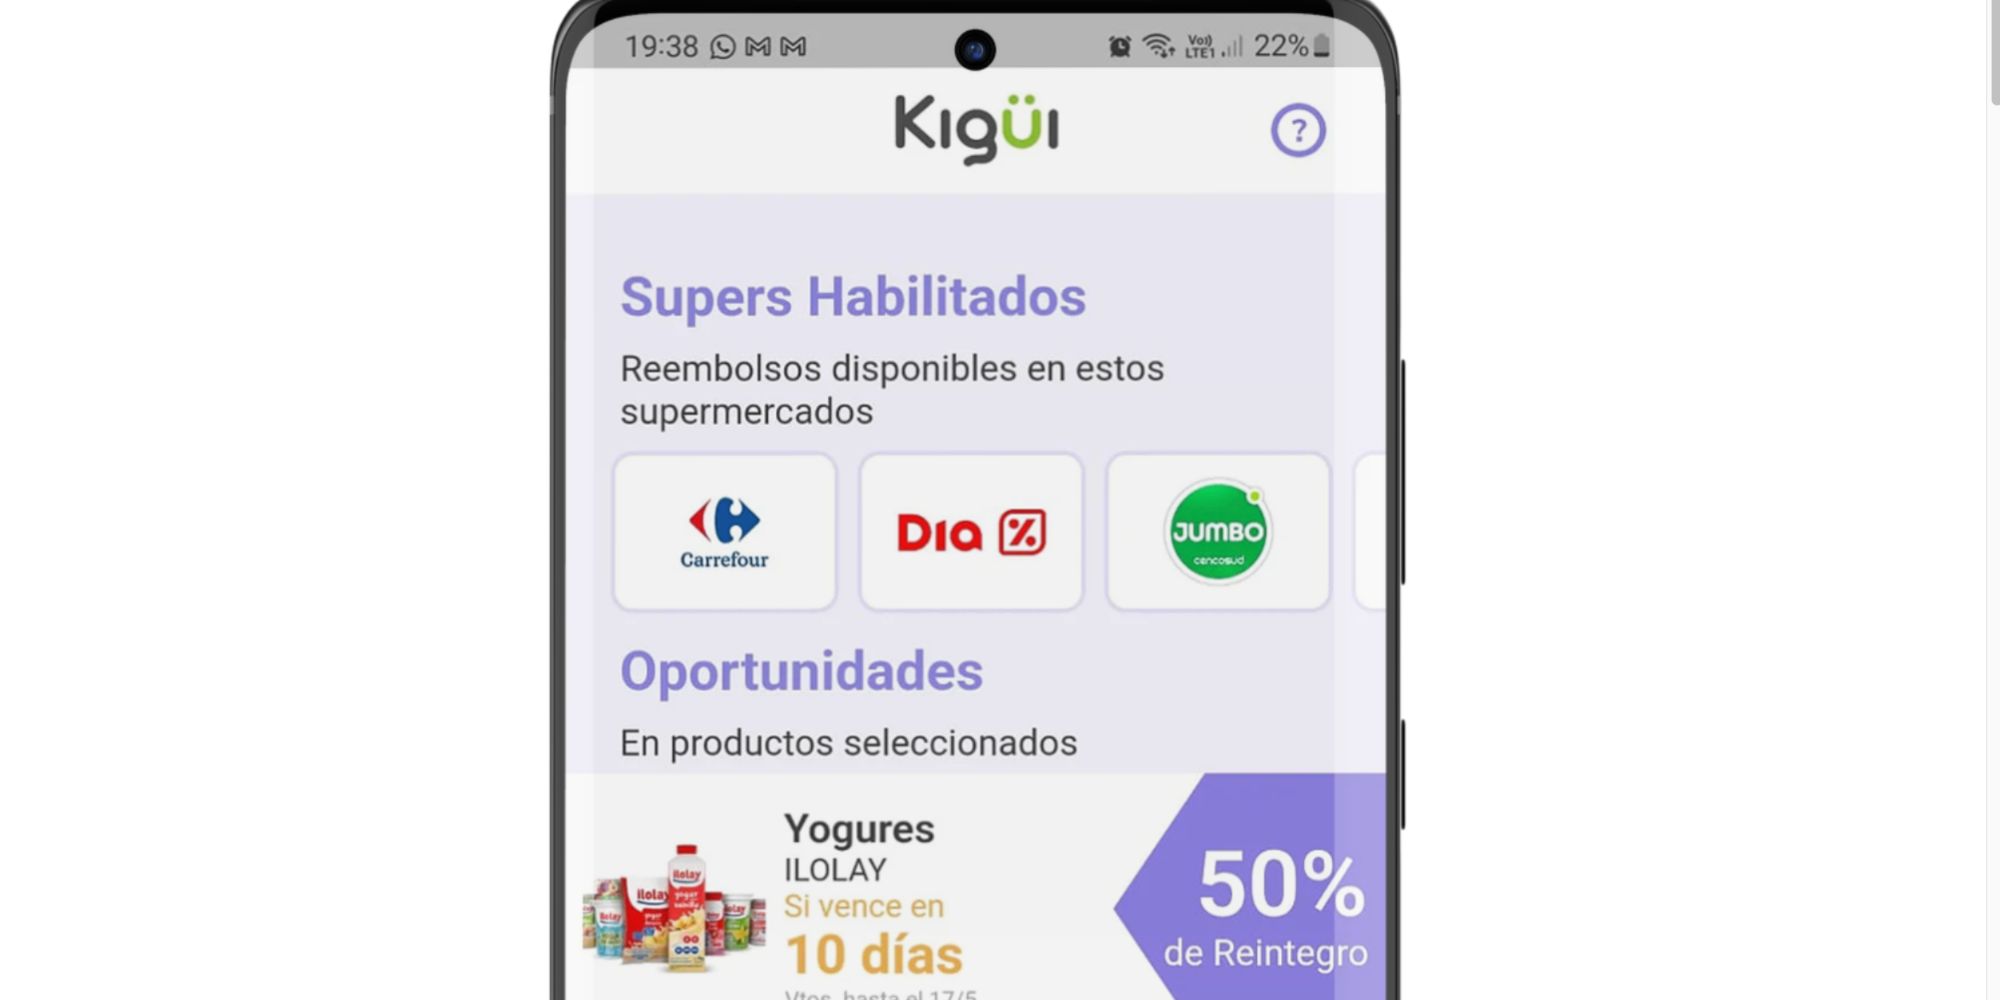 kigui.mx combatiendo el desperdicio de alimentos